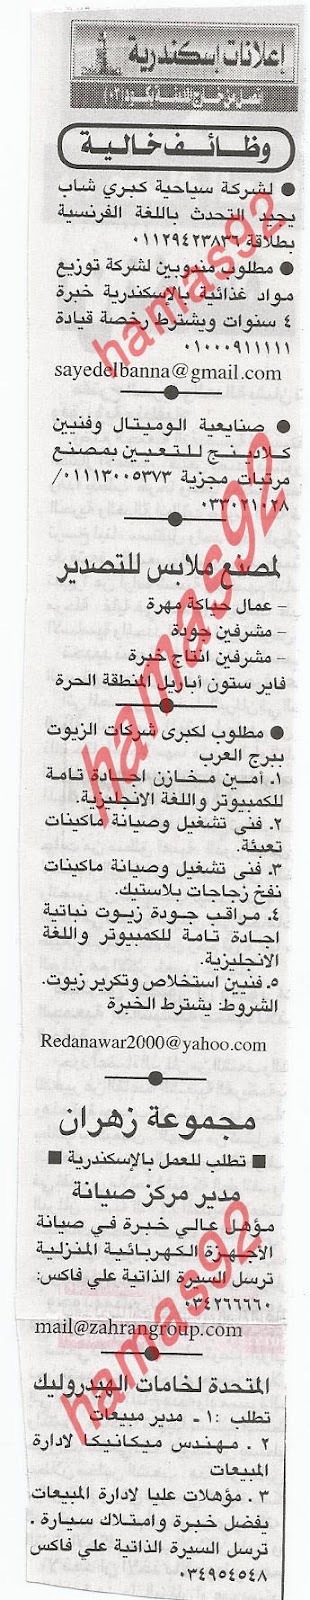 وظائف الاسكندرية من جريدة الاهرام الجمعة 2 مارس 2012  %D8%A7%D9%87%D8%B1%D8%A7%D9%85+2